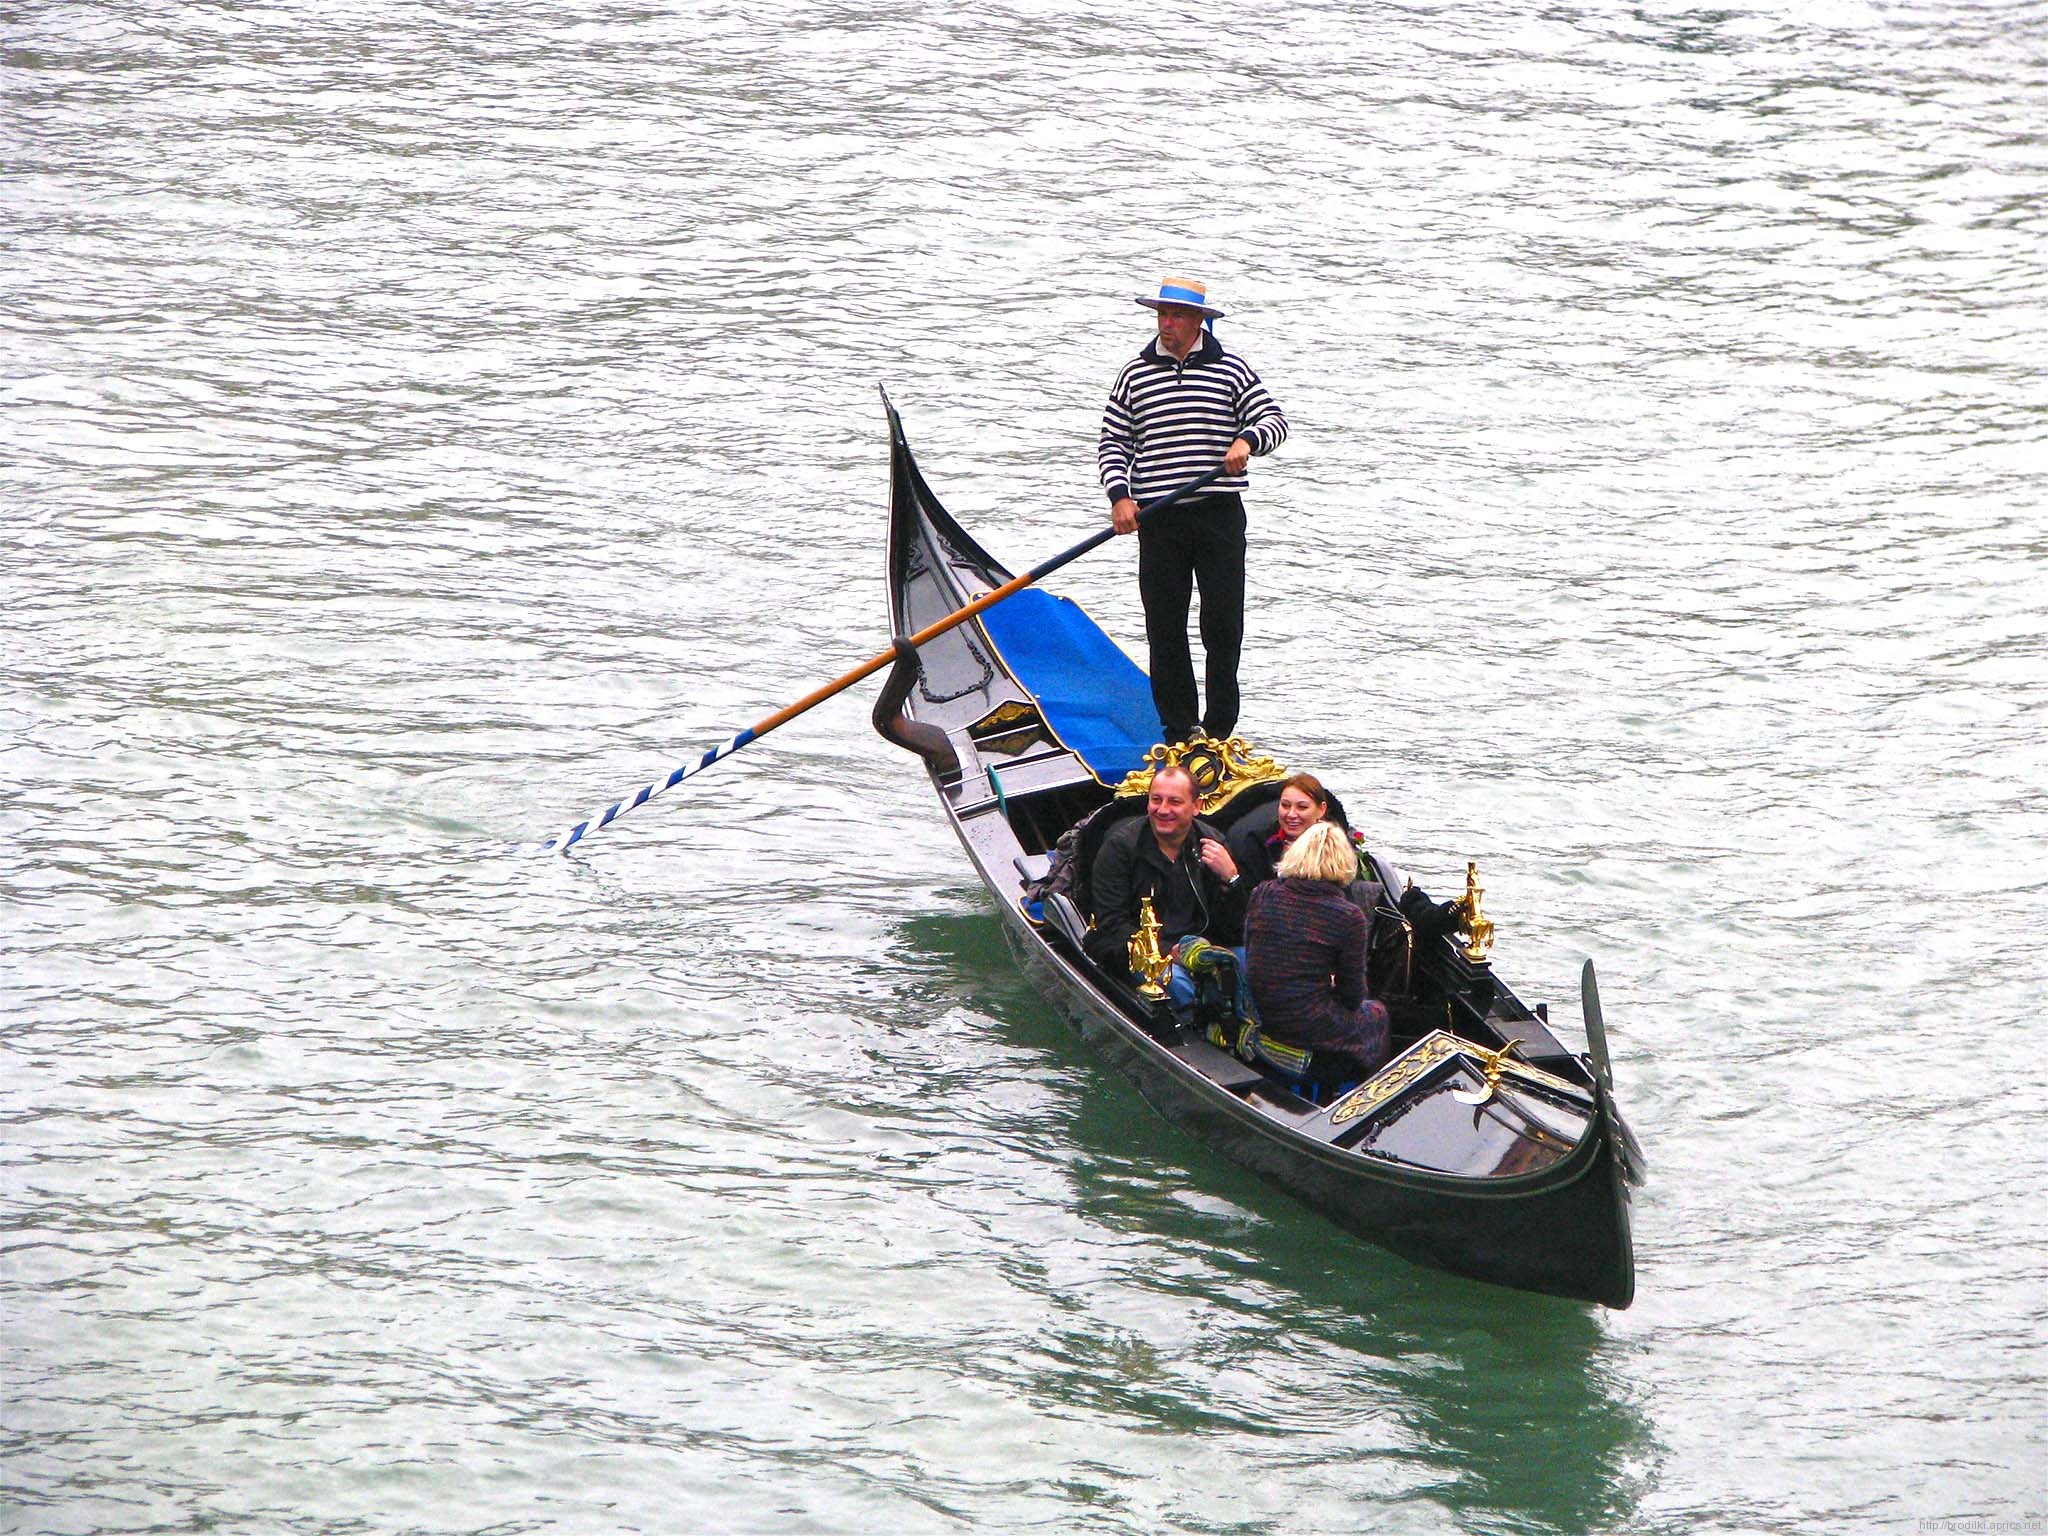 Гондольер катает туристов. Гранд-канал, Венеция, Италия